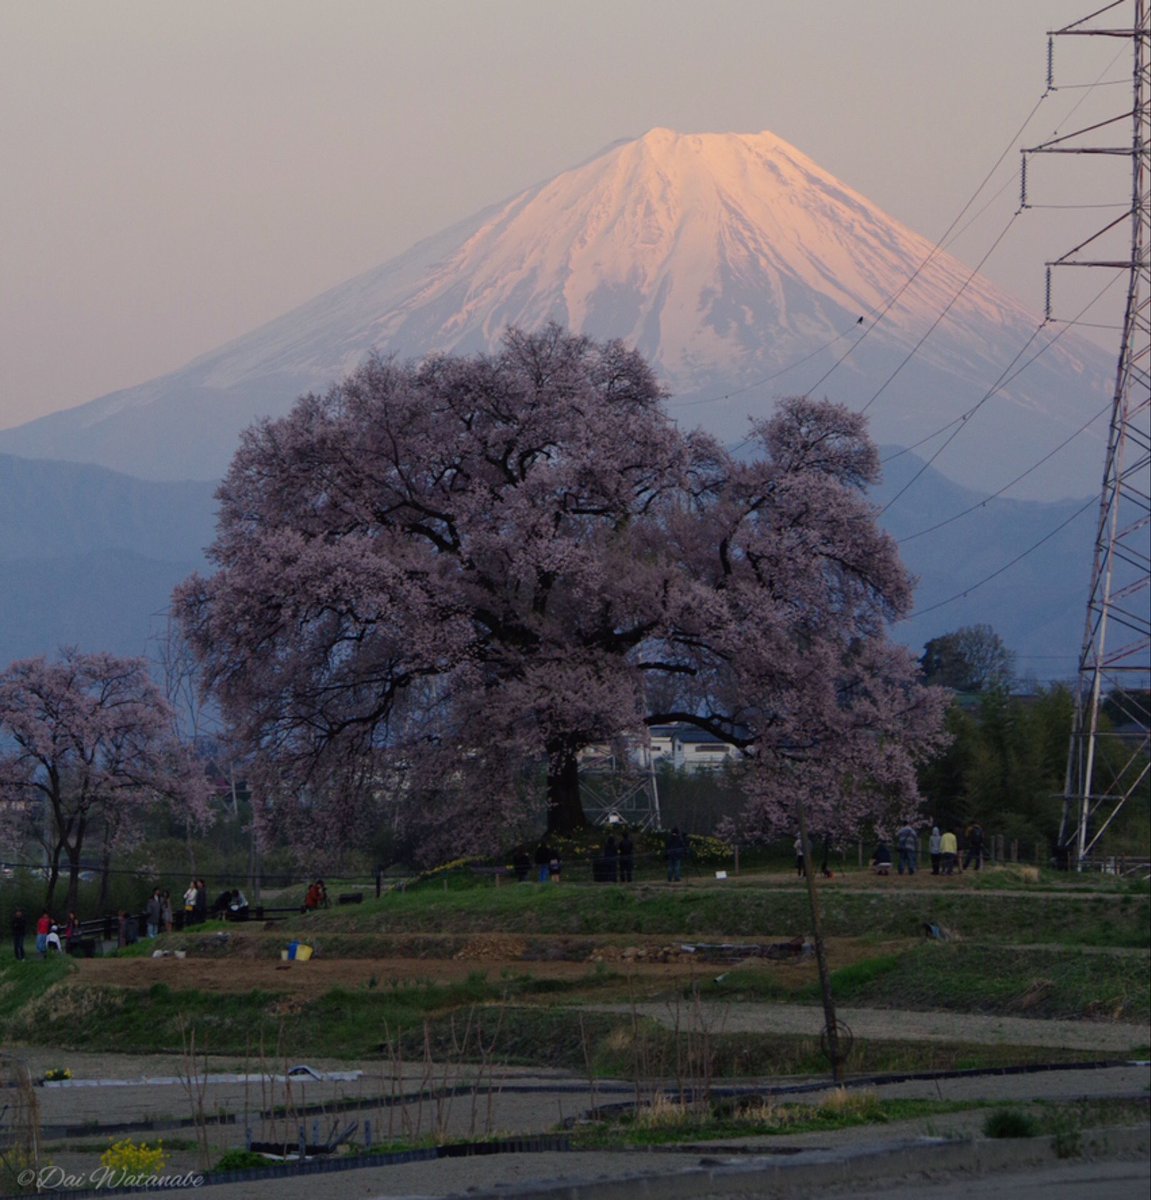 わに塚の桜と富士山 昨年の写真です。今年も時間があれば見に行きたいと考えてます😊 #PENTAX #ファインダー越しの私の世界 #東京カメラ部 #富士山